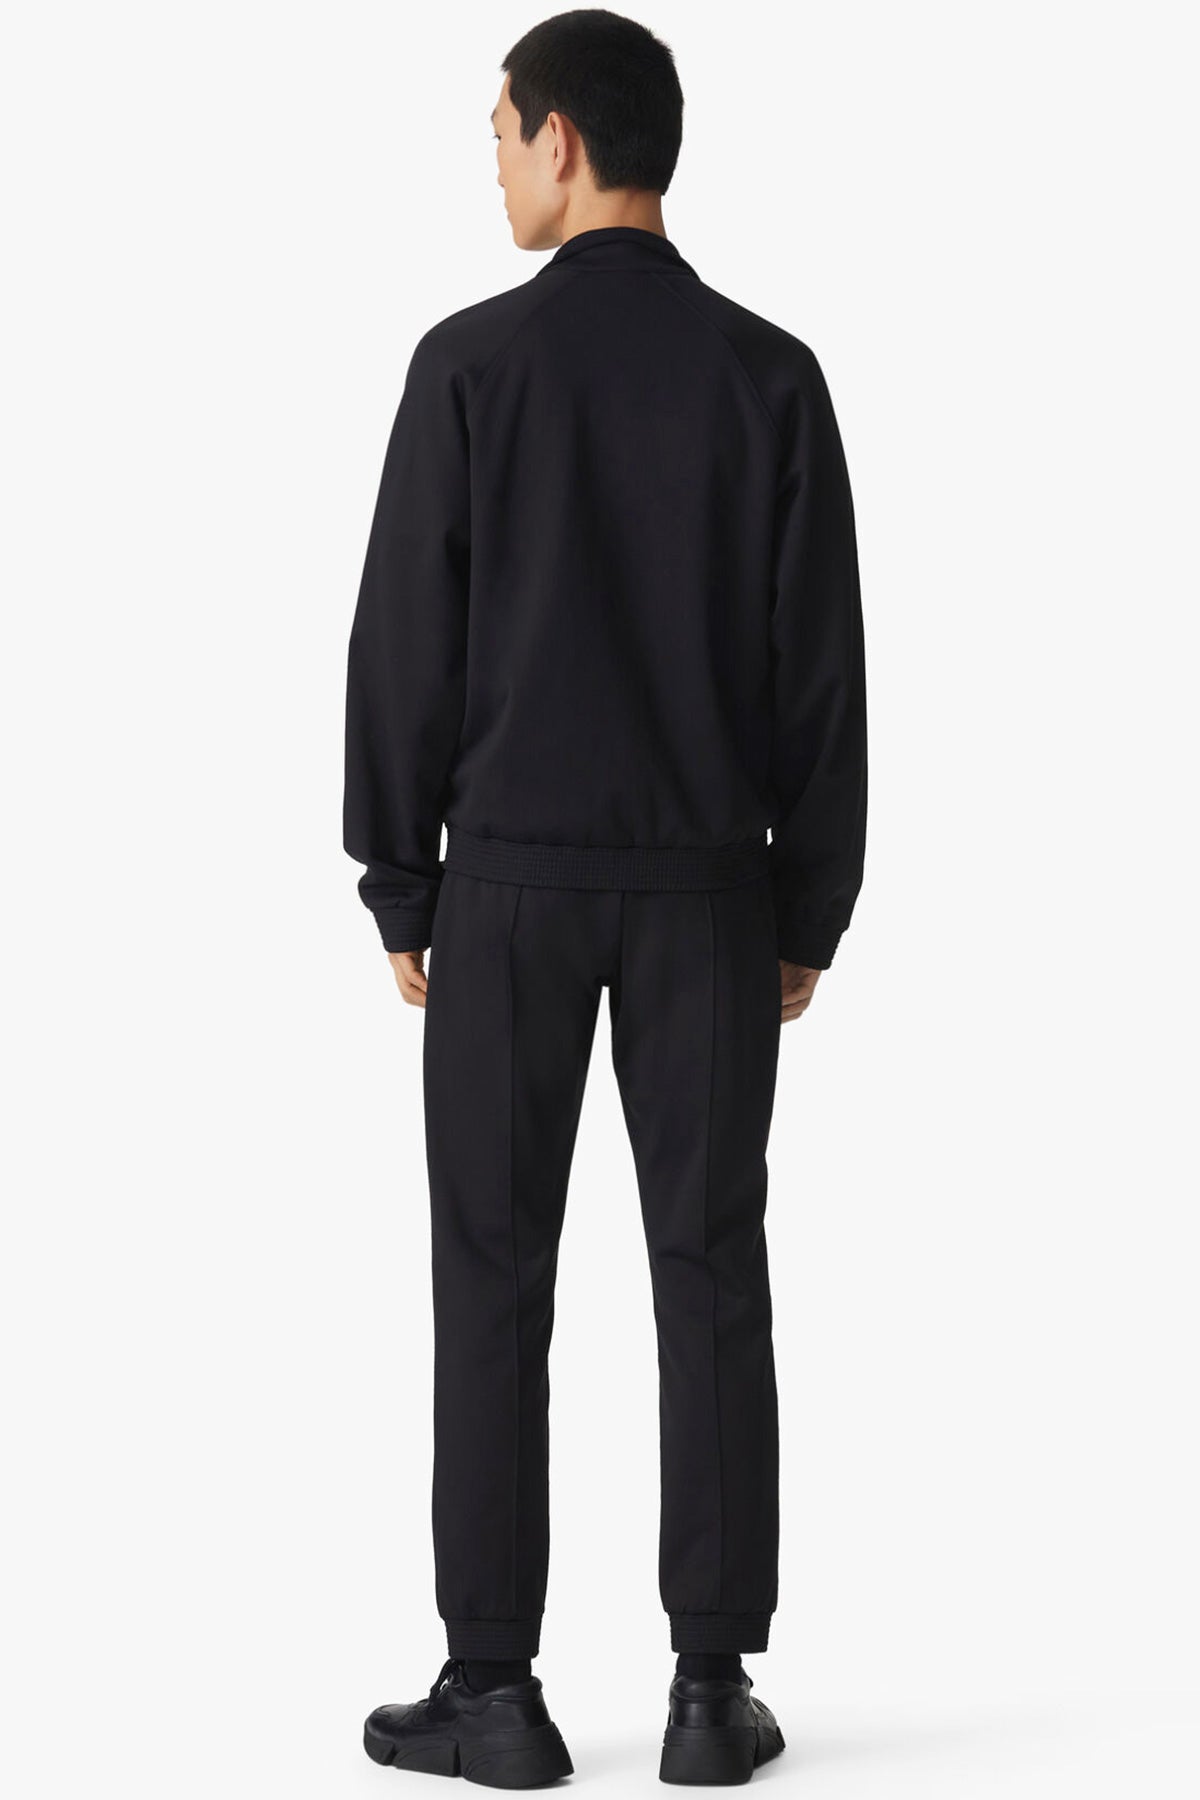 Kenzo Kaplan Logolu Jogger Pantolon-Libas Trendy Fashion Store